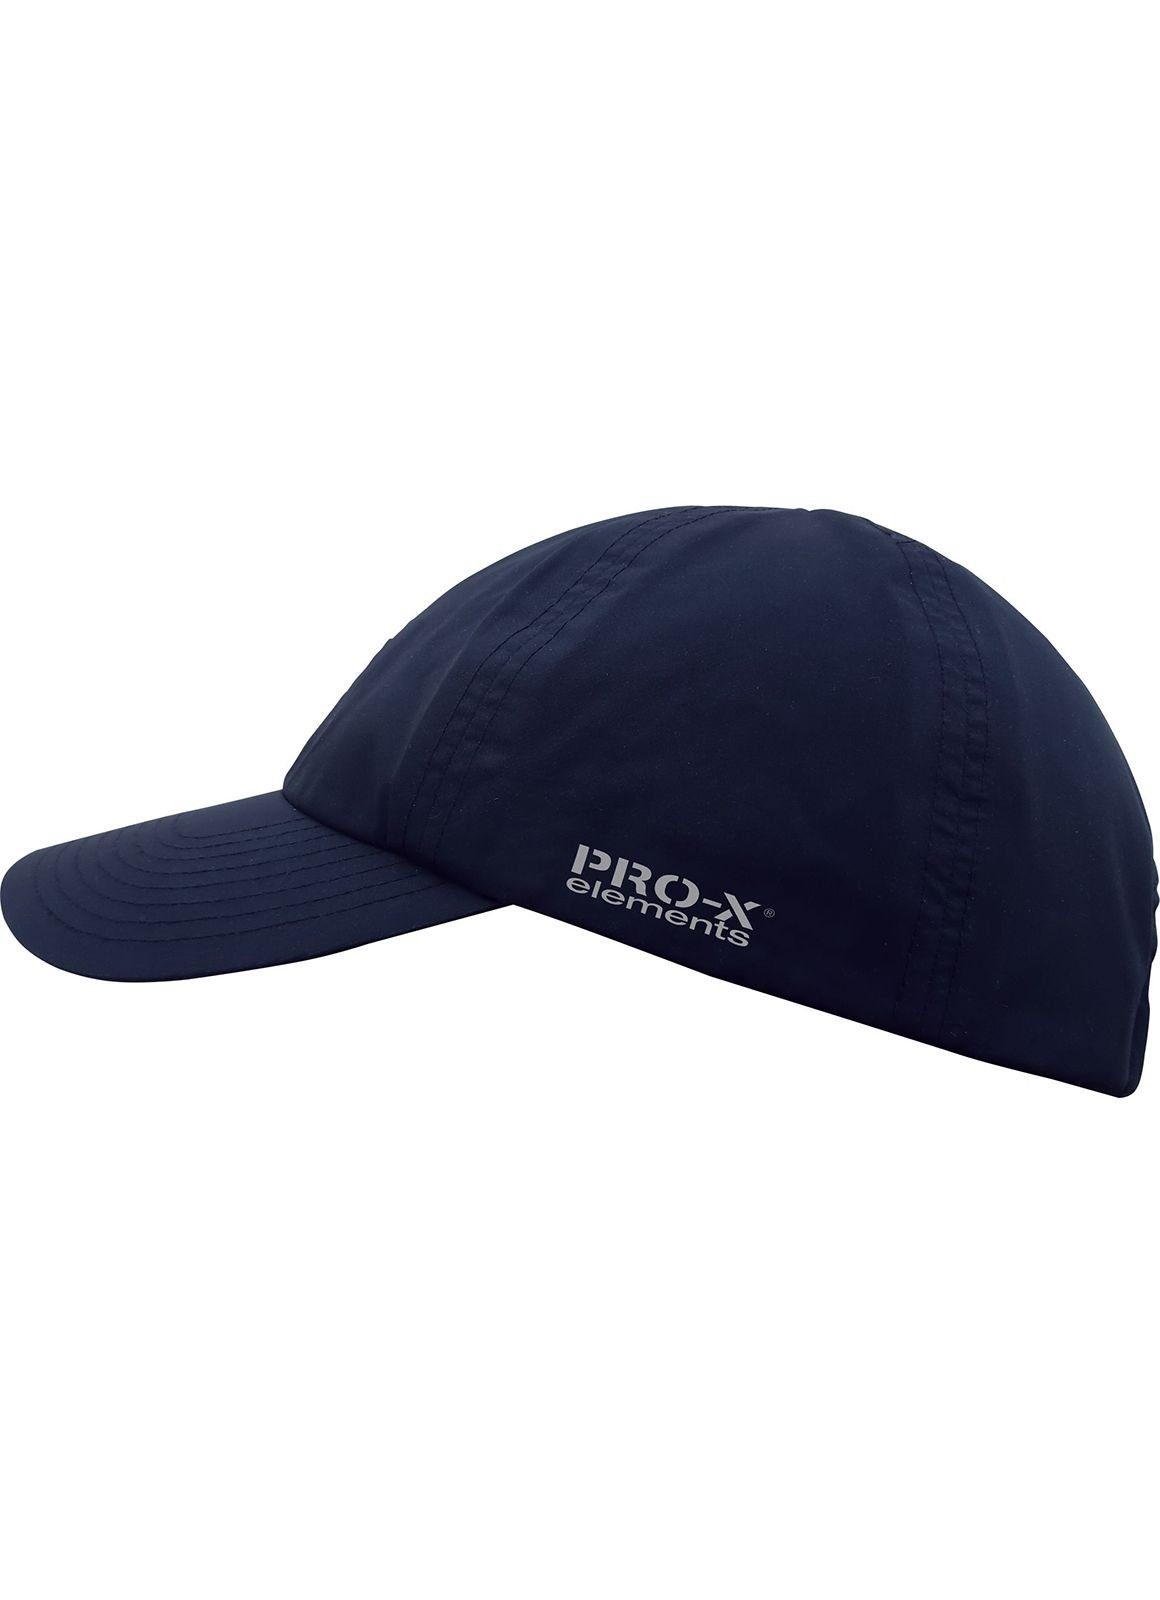 PRO-X ELEMENTS Outdoorhut RAIN CAP Marineblau | Hüte